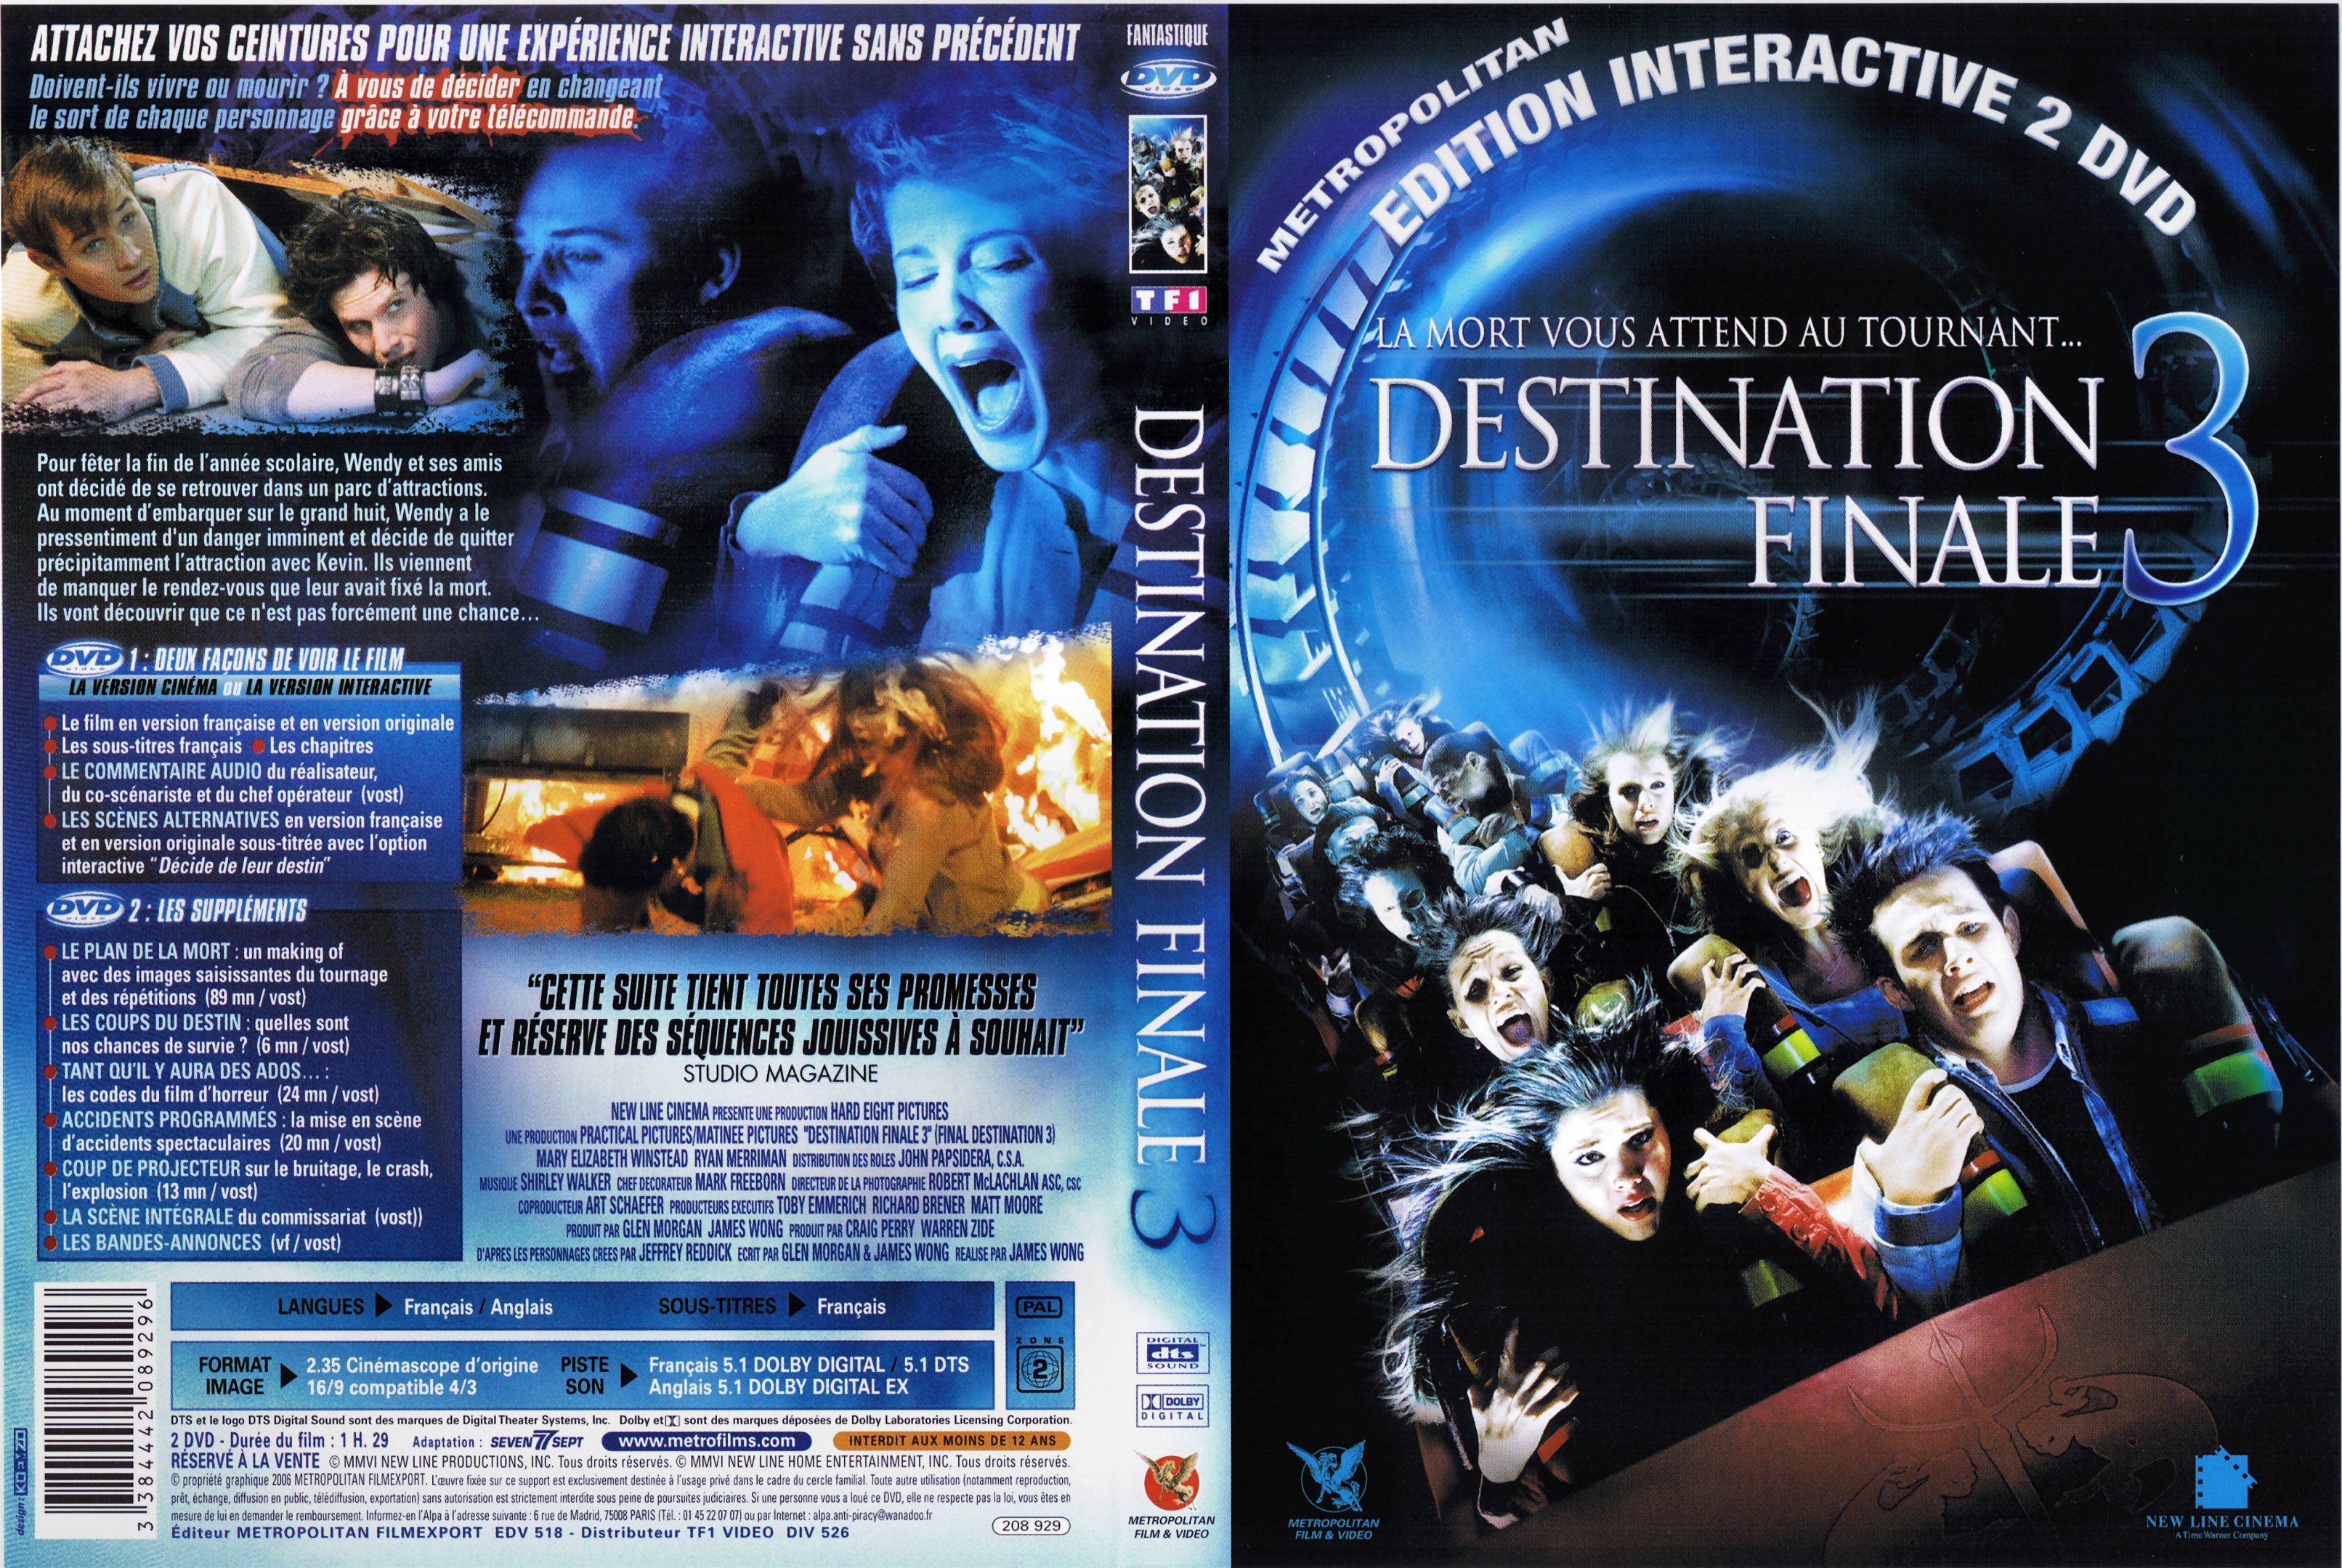 Jaquette DVD Destination finale 3 v2